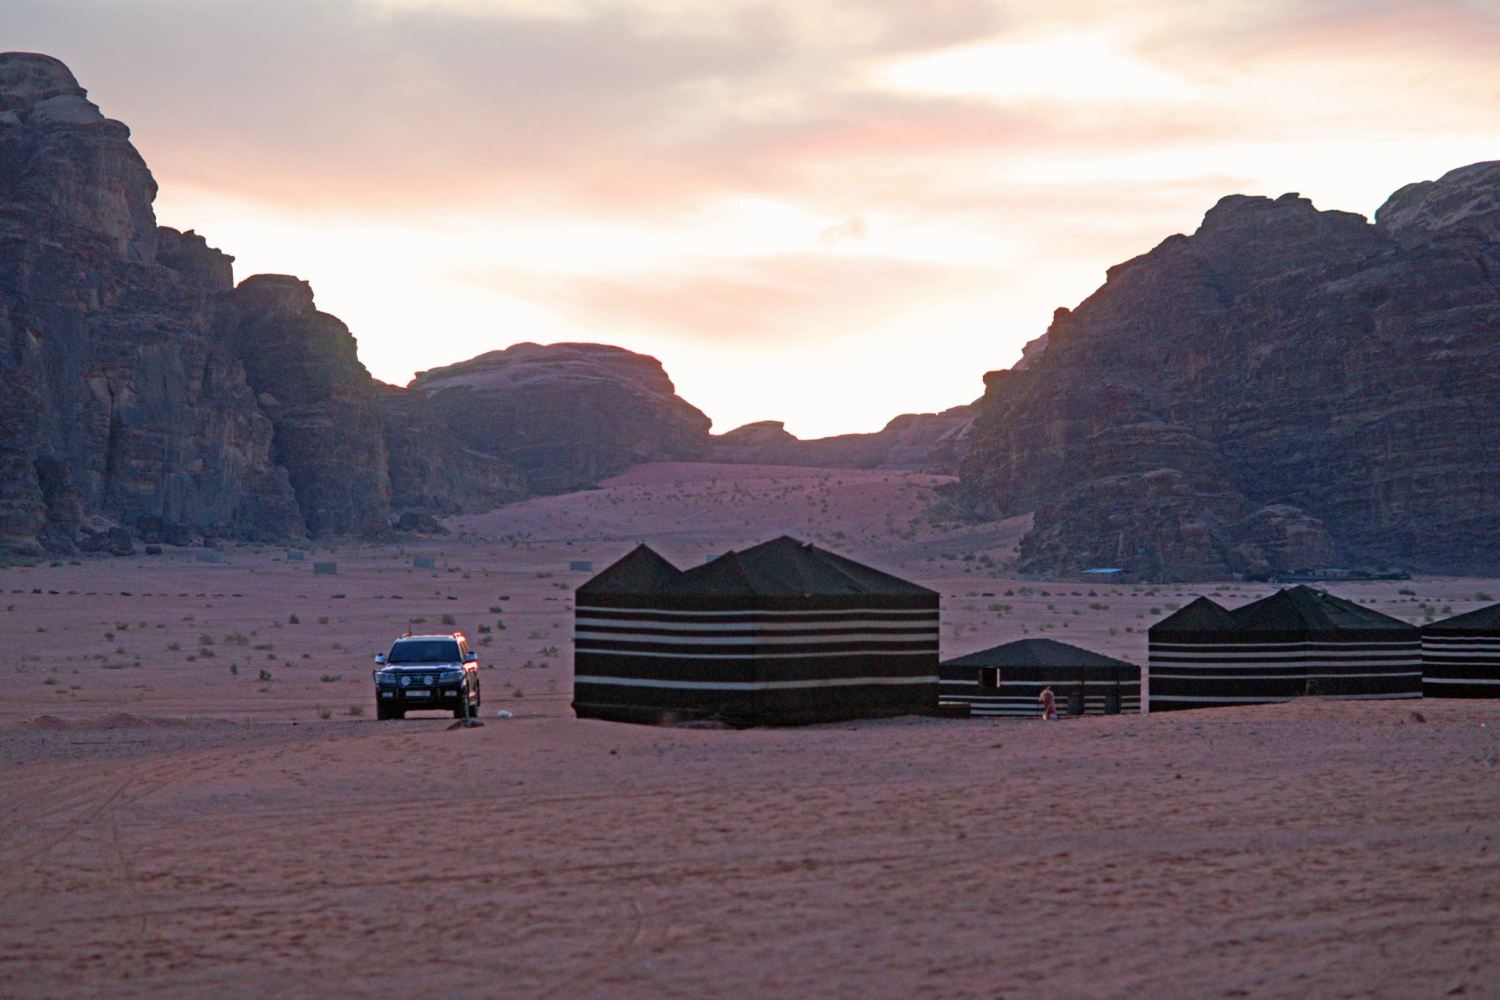 Sun City Camp Wadi Rum - Jordan